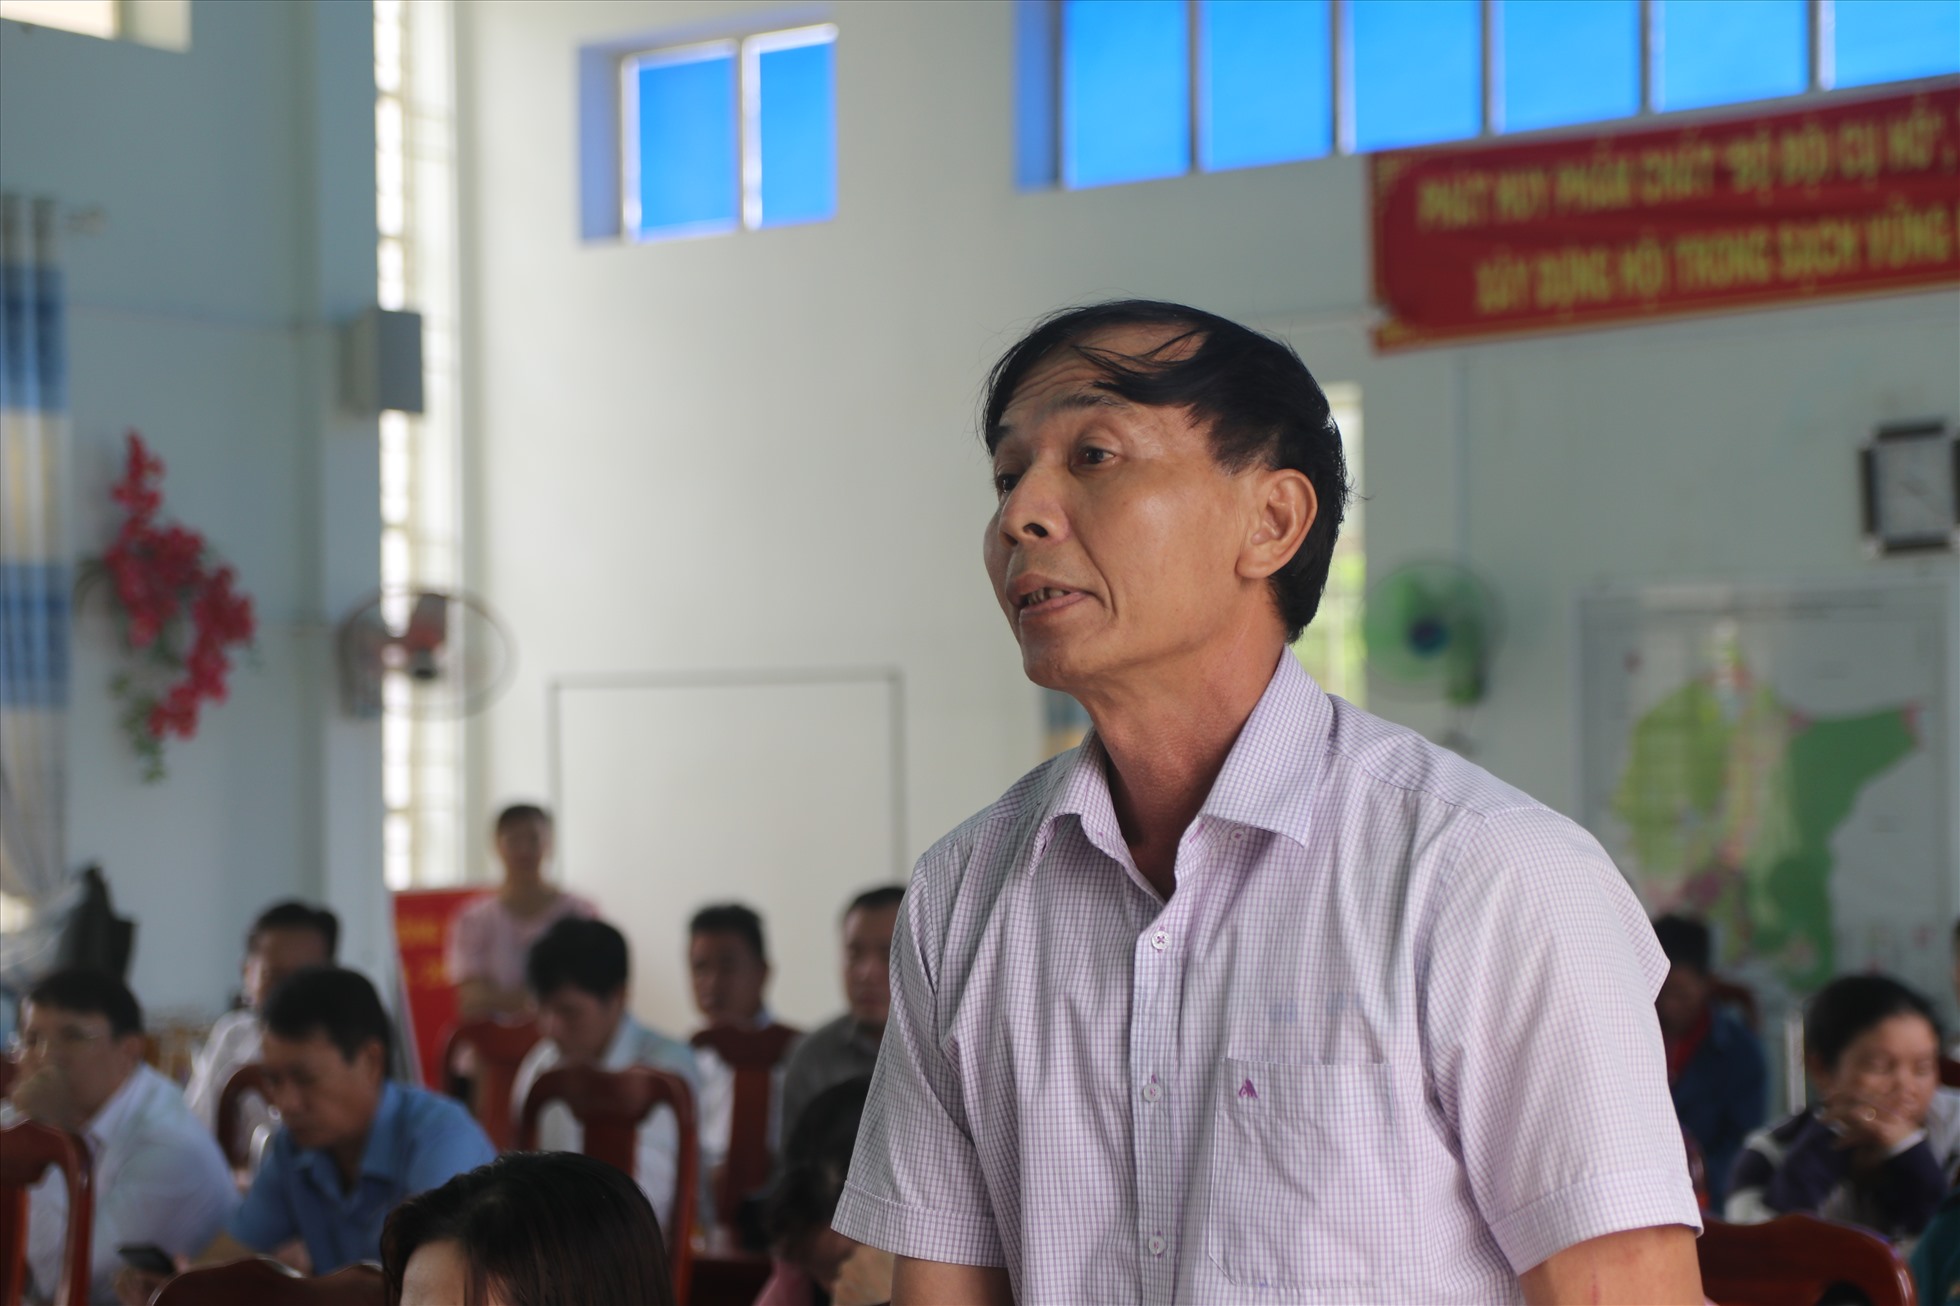 Cử tri Nguyễn Văn Thắng kiến nghị nhiều nội dung liên quan đến chế độ cho những người làm công tác chi hội. Ảnh: P.Linh